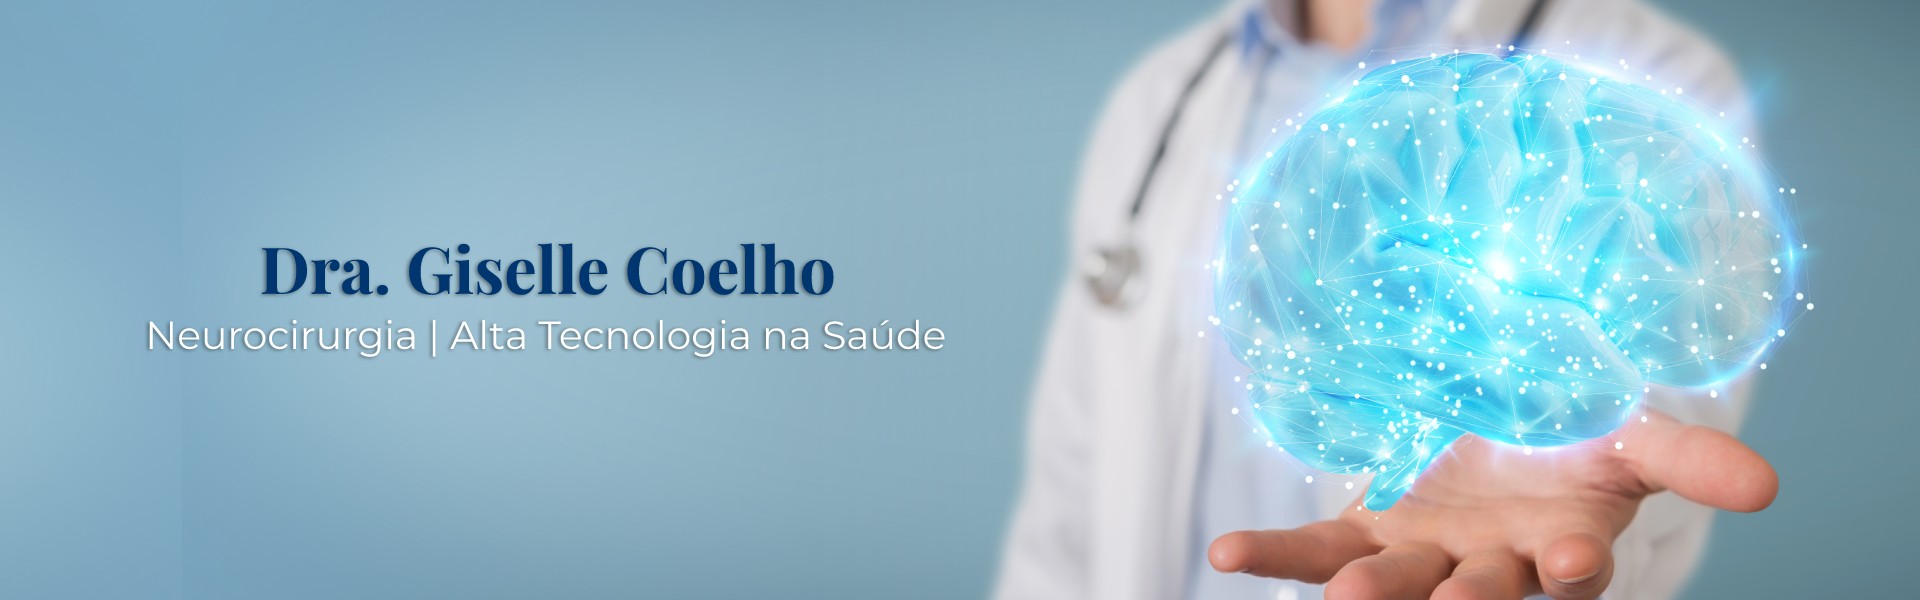 Dra. Giselle Coelho - Neurocirurgia